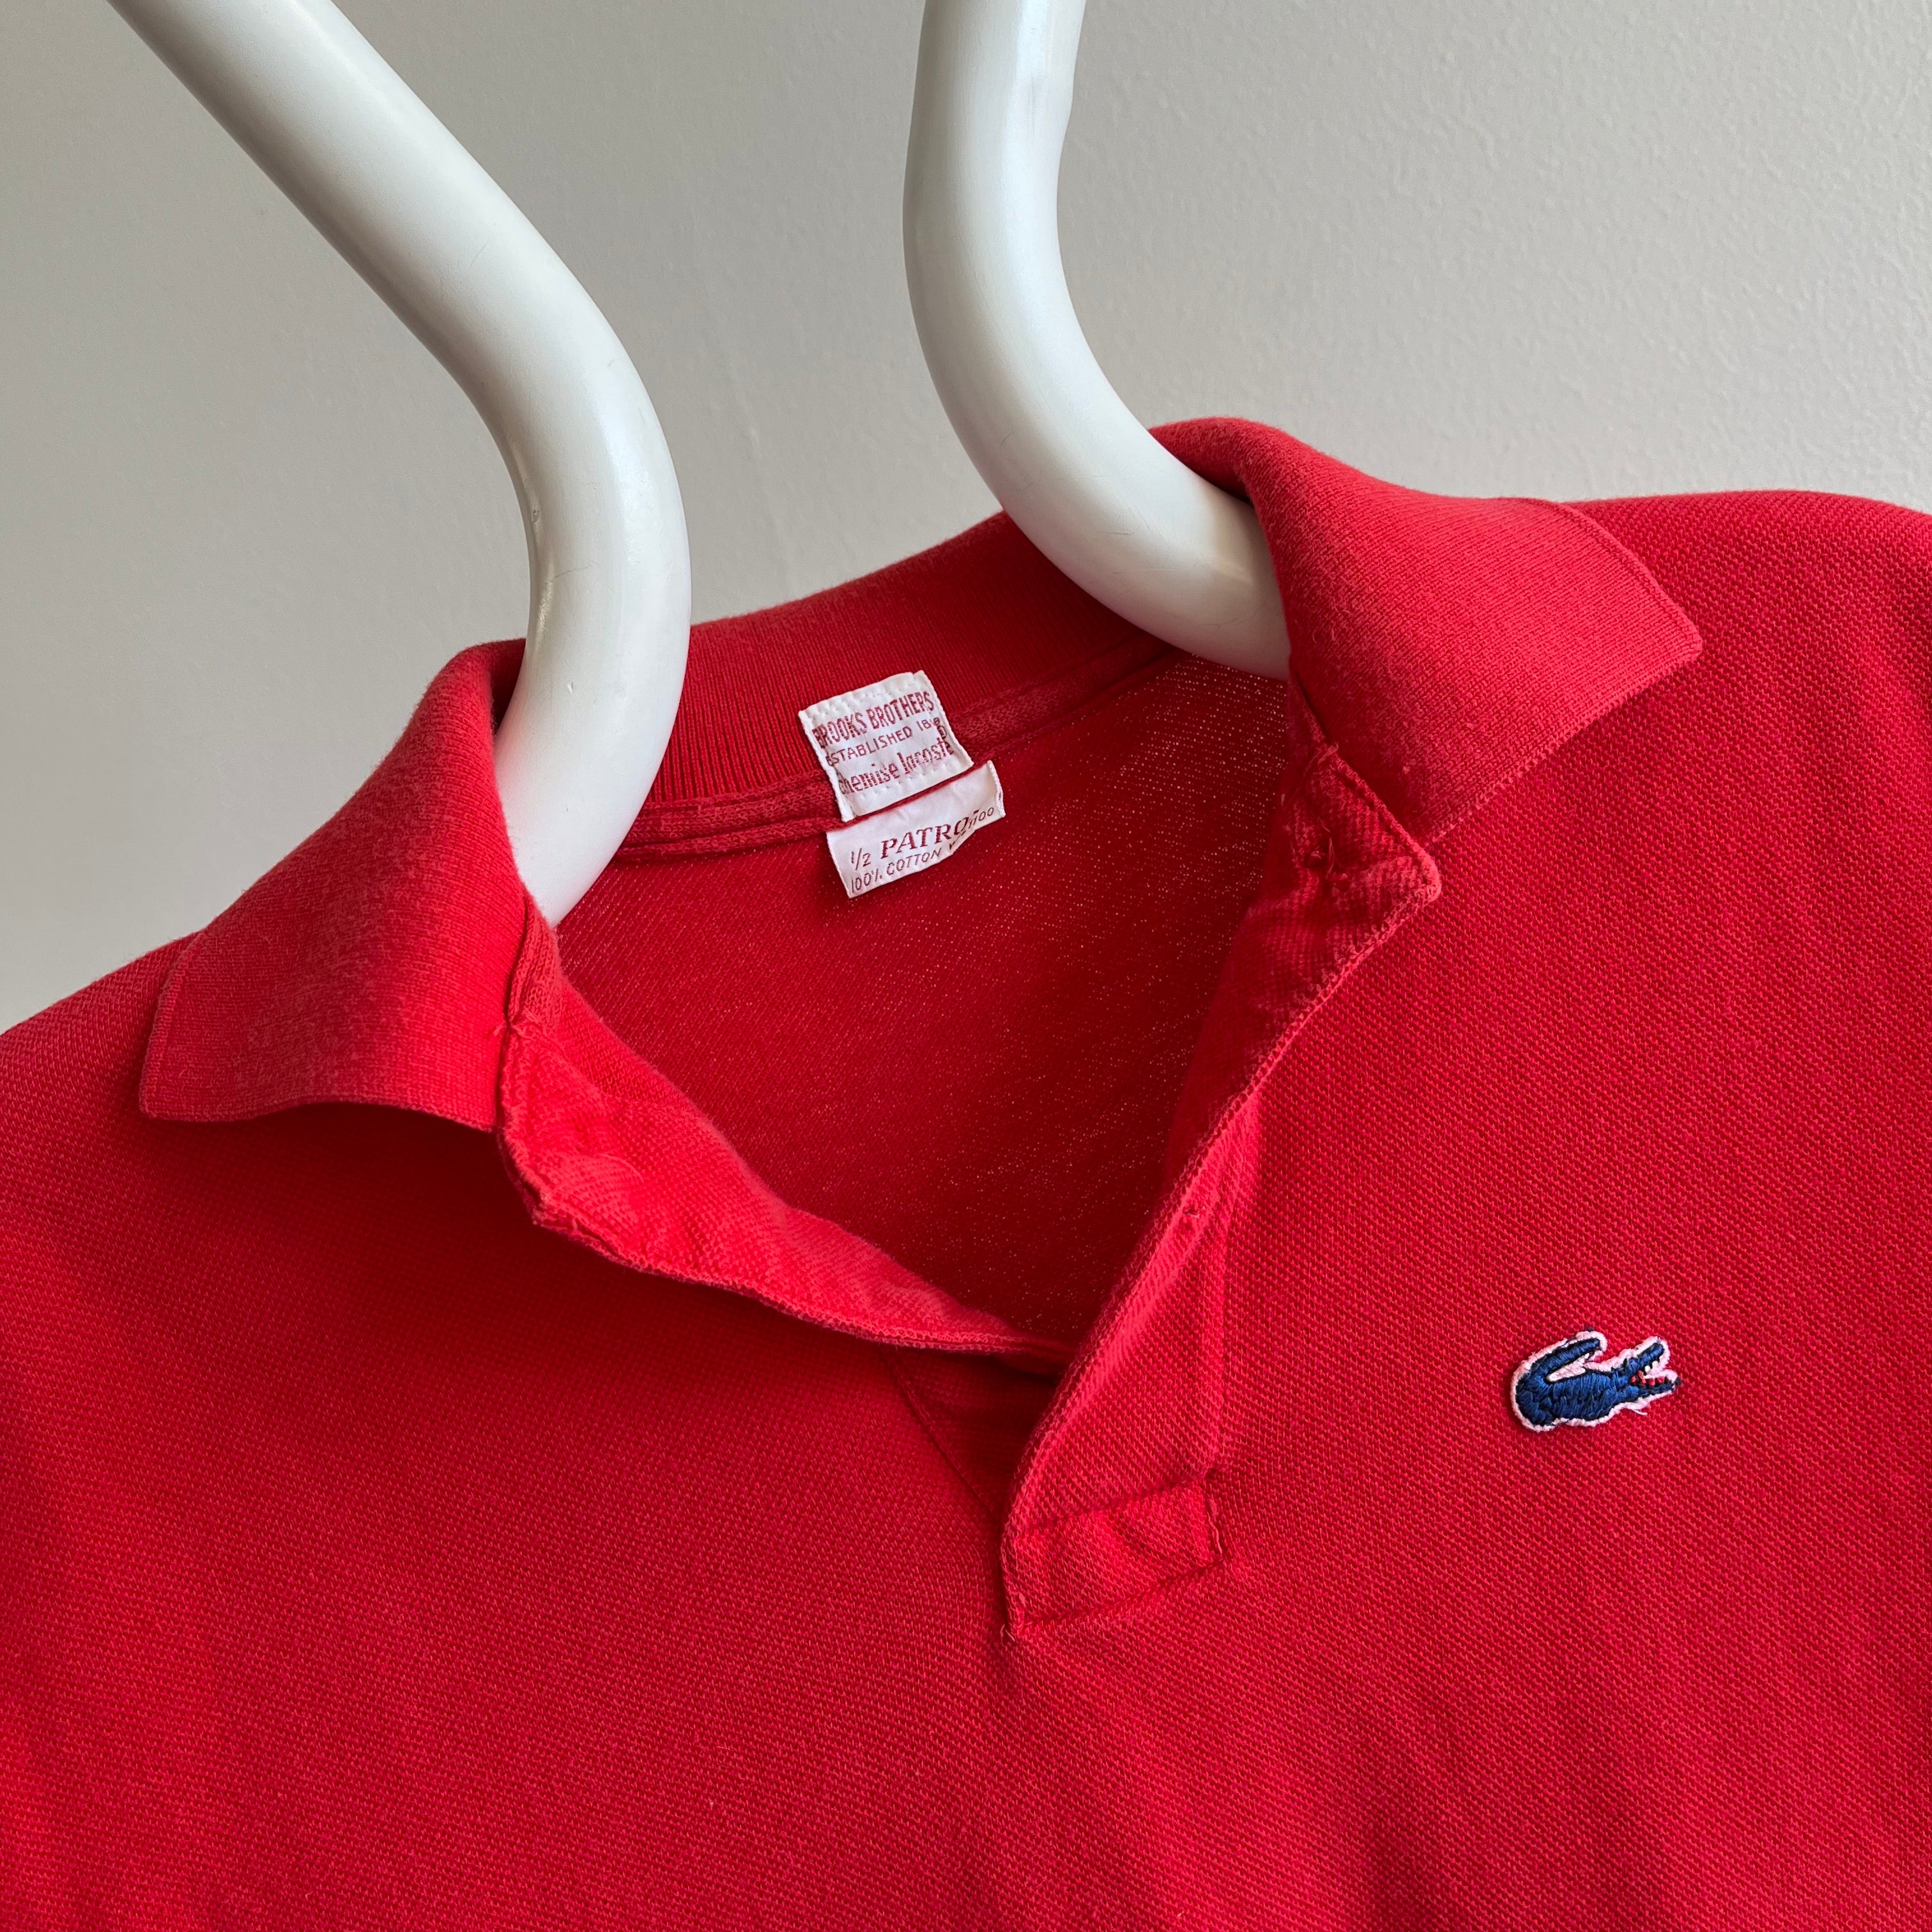 kultur Hvornår Tænke 1960/70s Brooks Brothers x LaCoste Killer 80s Cut Red Polo Shirt – Red  Vintage Co